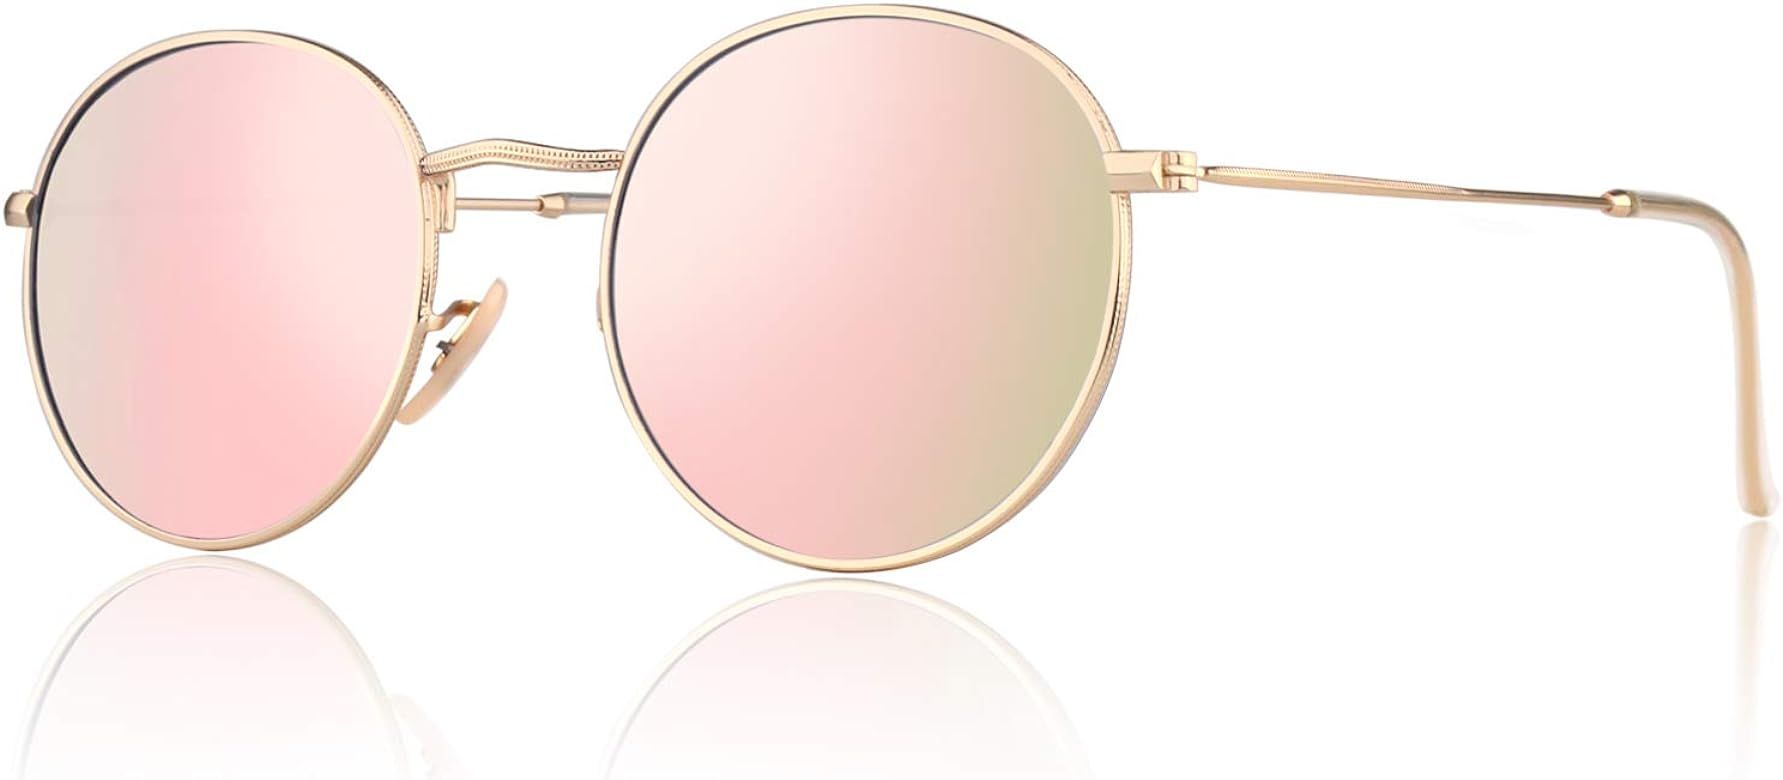 CGID E01 Lennon Round Polarized Unisex Sunglasses | Amazon (US)